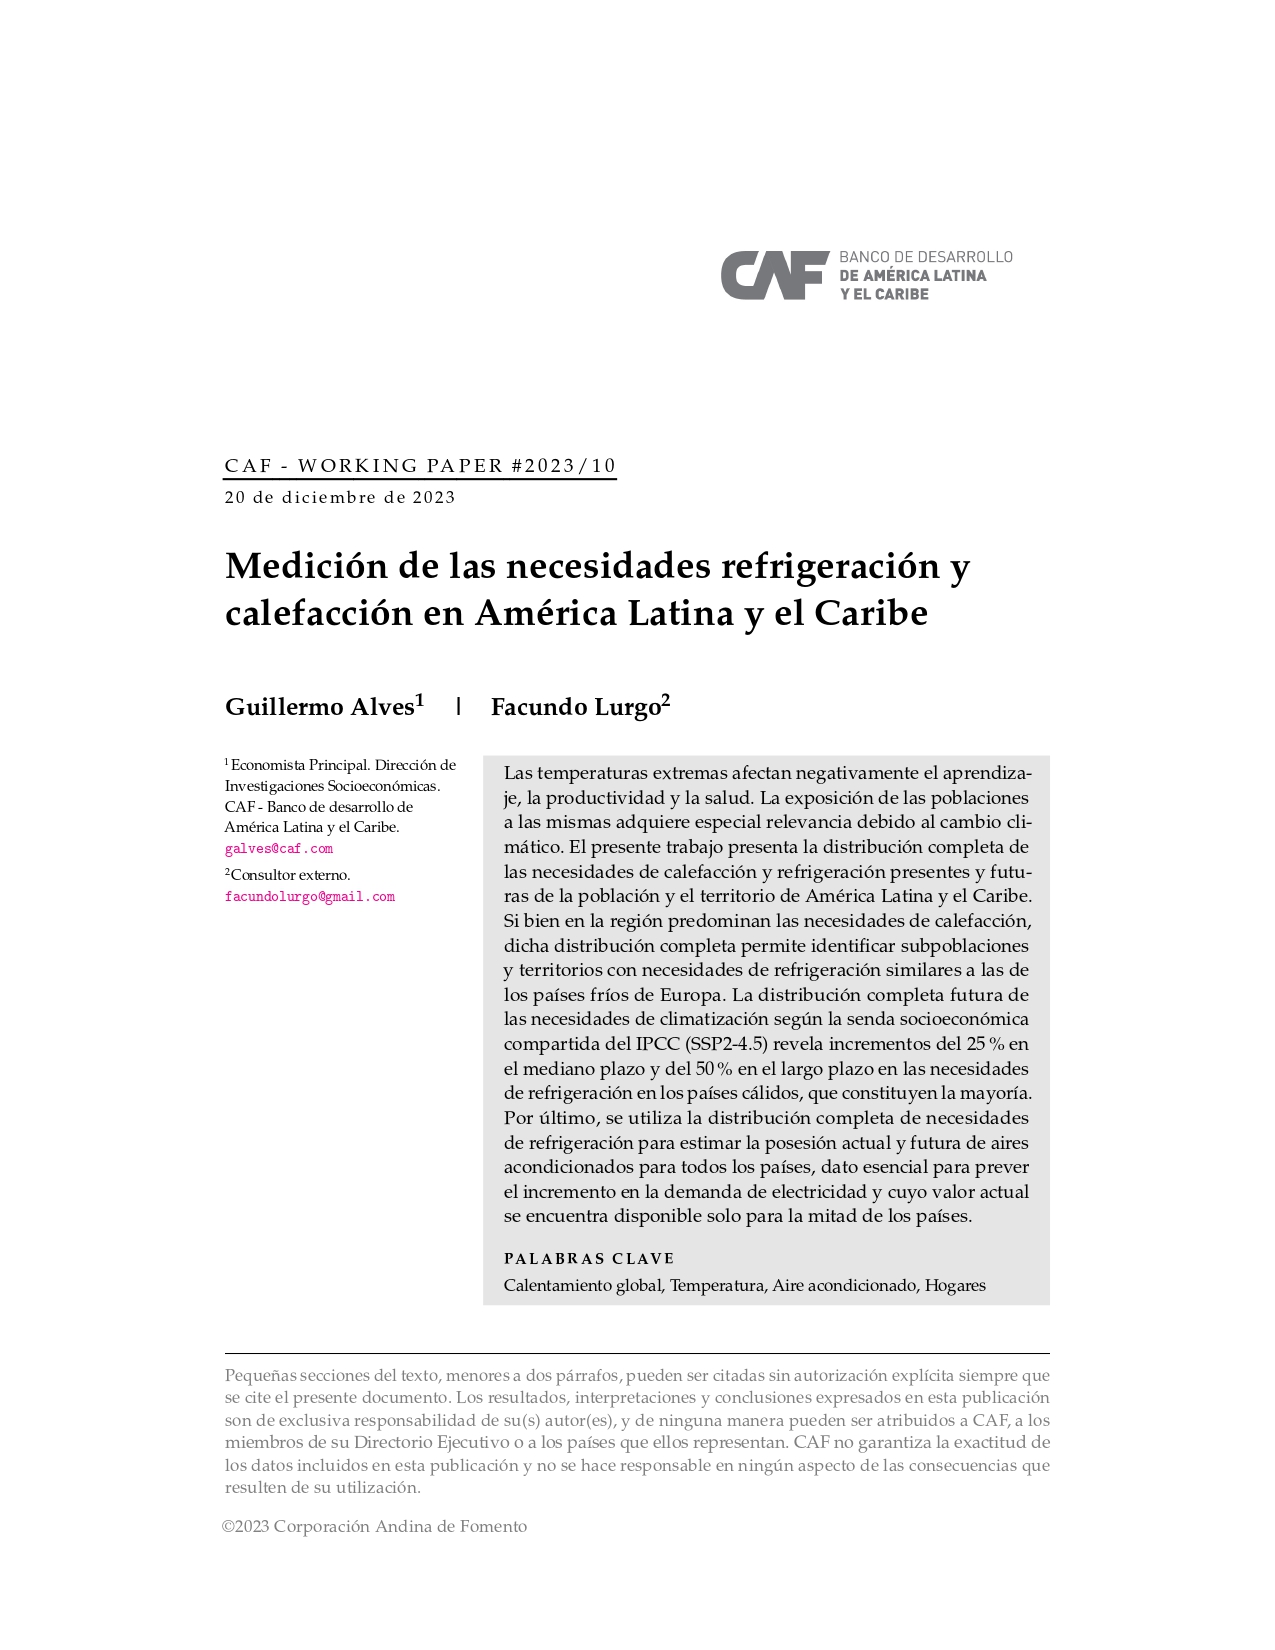 Medición de las necesidades refrigeración y calefacción en América Latina y el Caribe